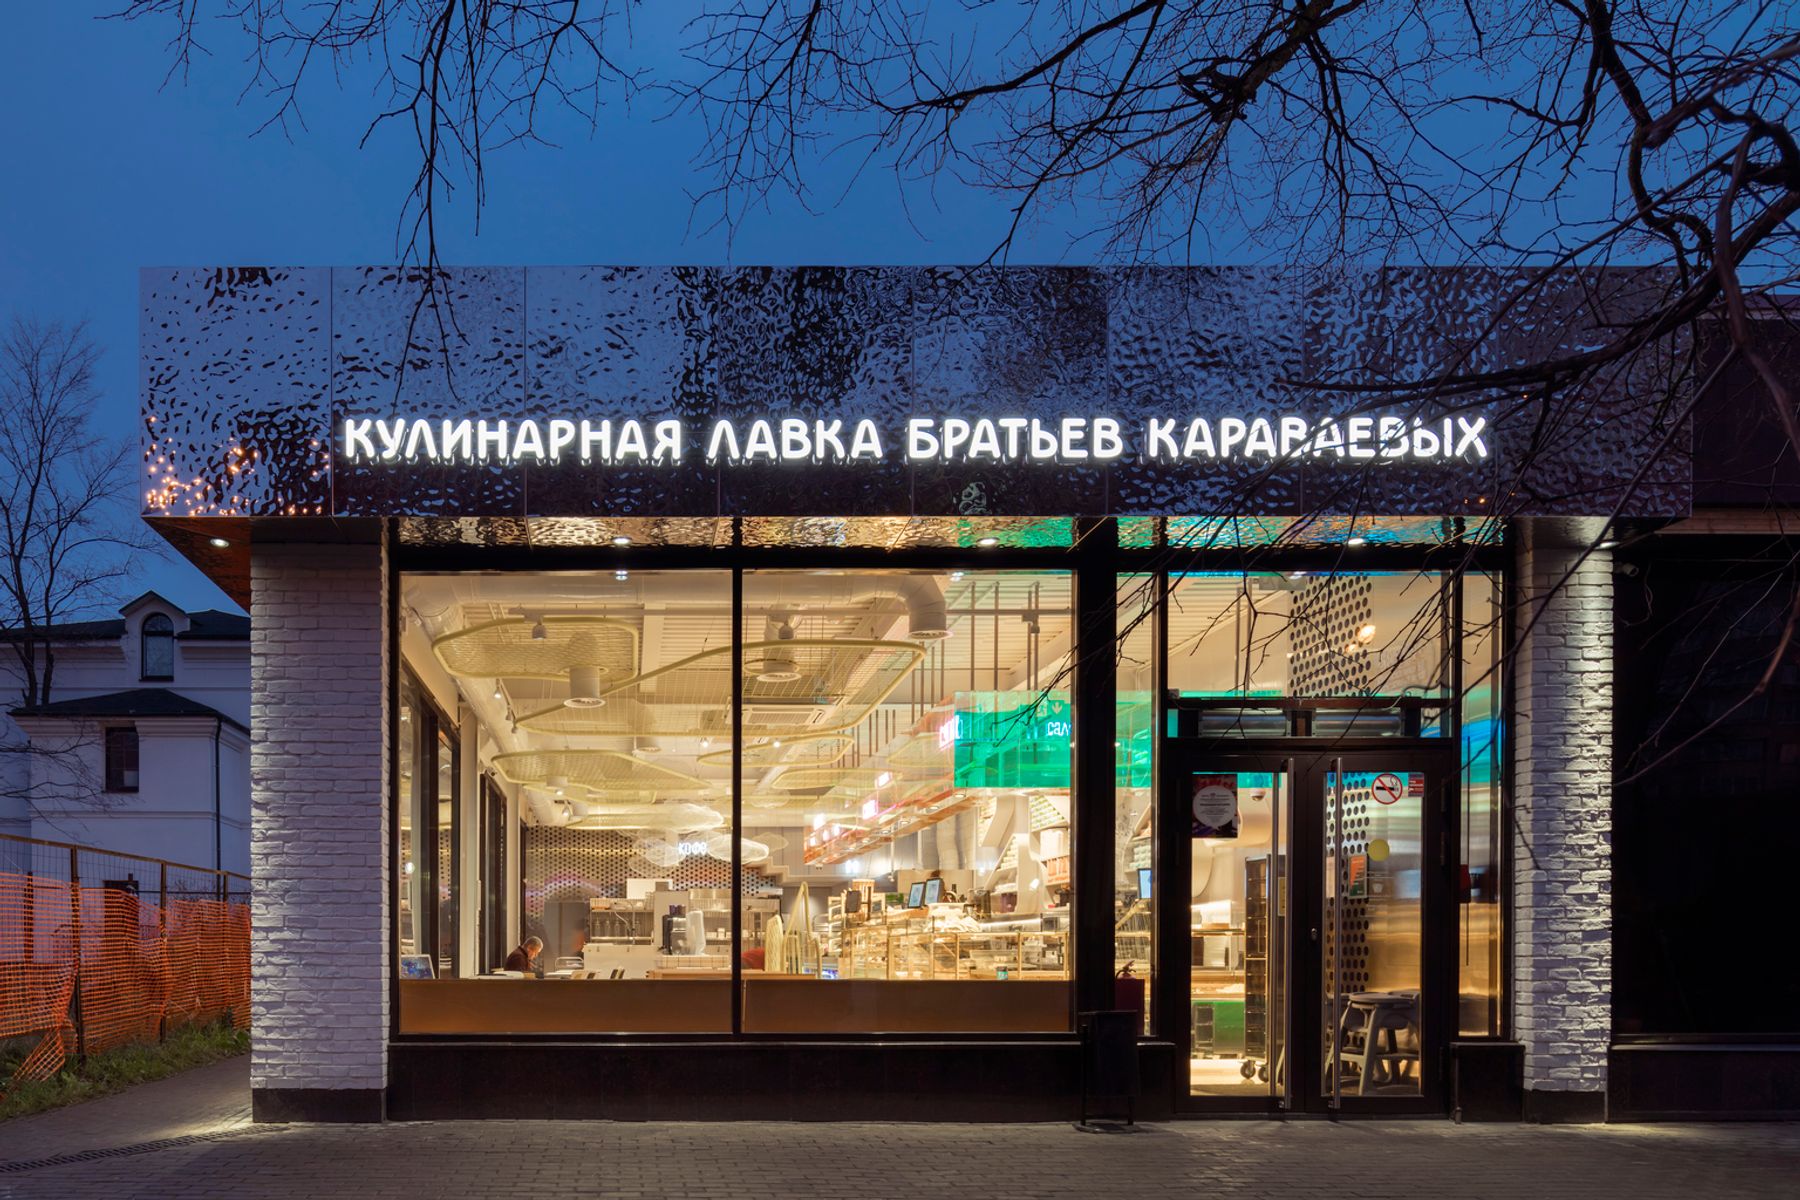 Karavaevi Brothers Cafe – Krzhizhanovskogo, Moskva. Arkitektur och ljusplanering: V12 Architects/Vvgeniy Shchetinkin, Lleeza Semionova, Moskva. Foto: D. Chebanenko.